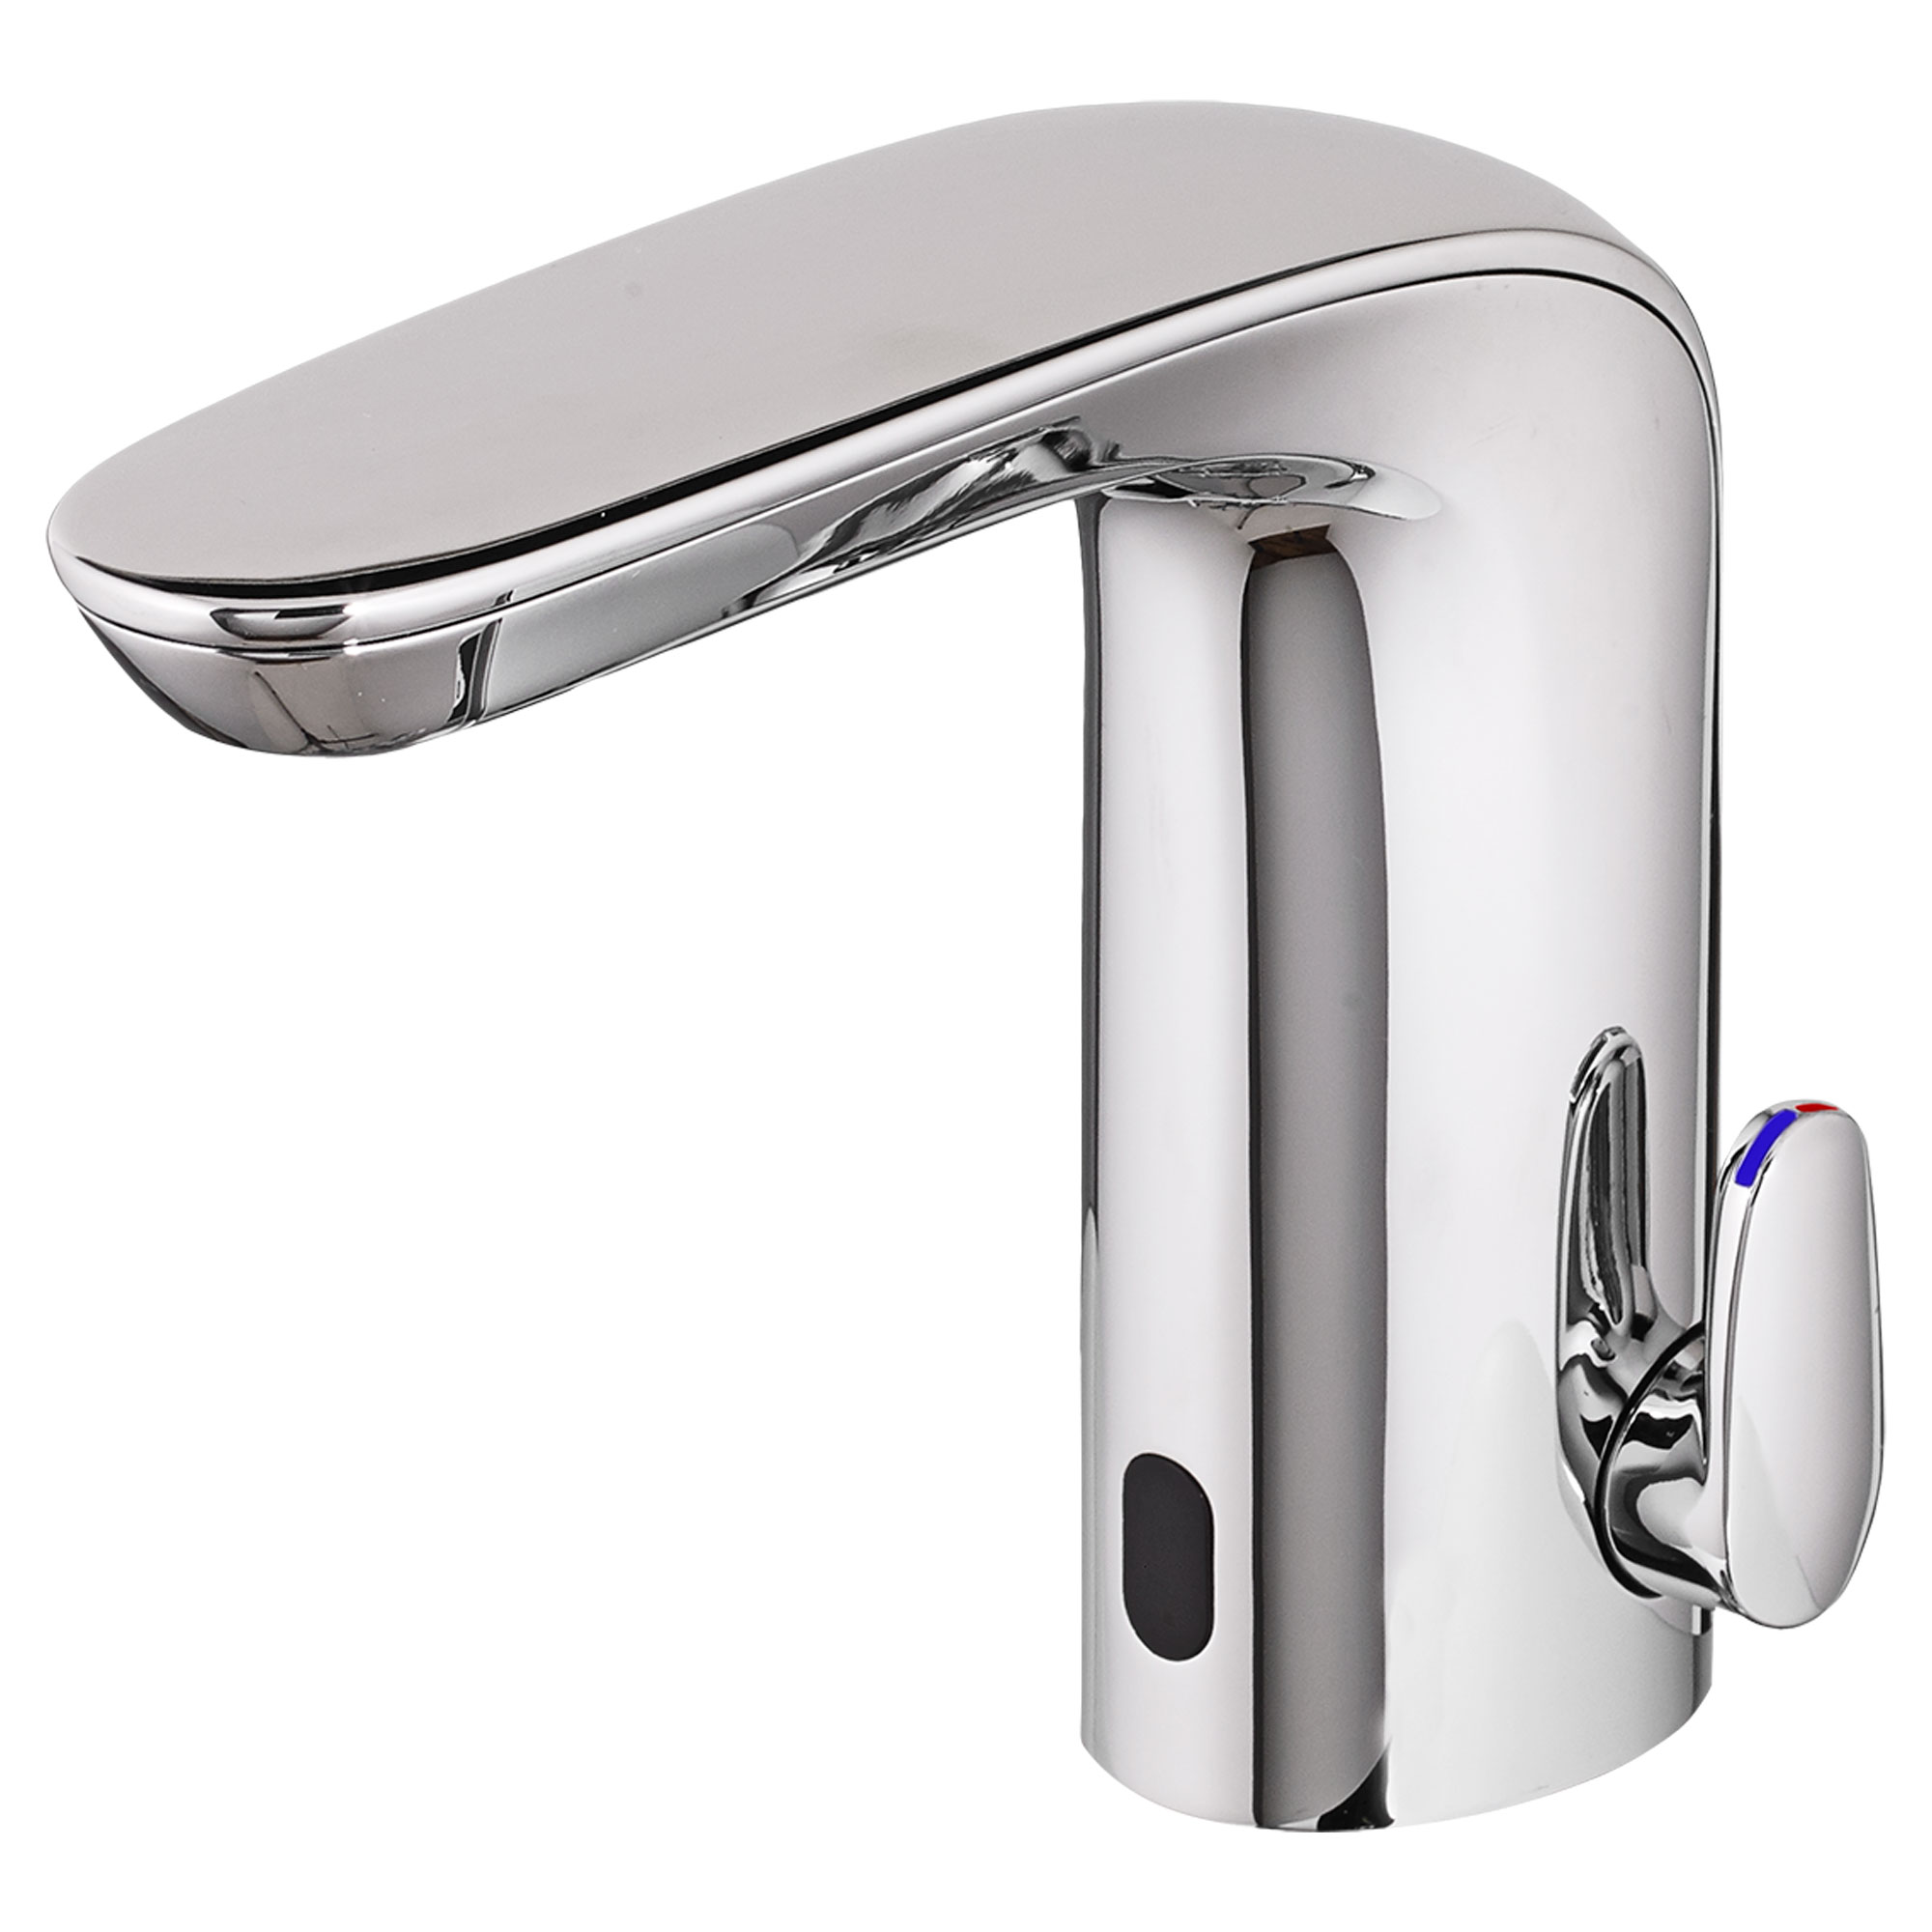 NextGen Selectronic -  robinet sans contact, alimentation à pile avec butée de sécurité SmarTherm + ADM, 0,35 gpm/1,3 l/min